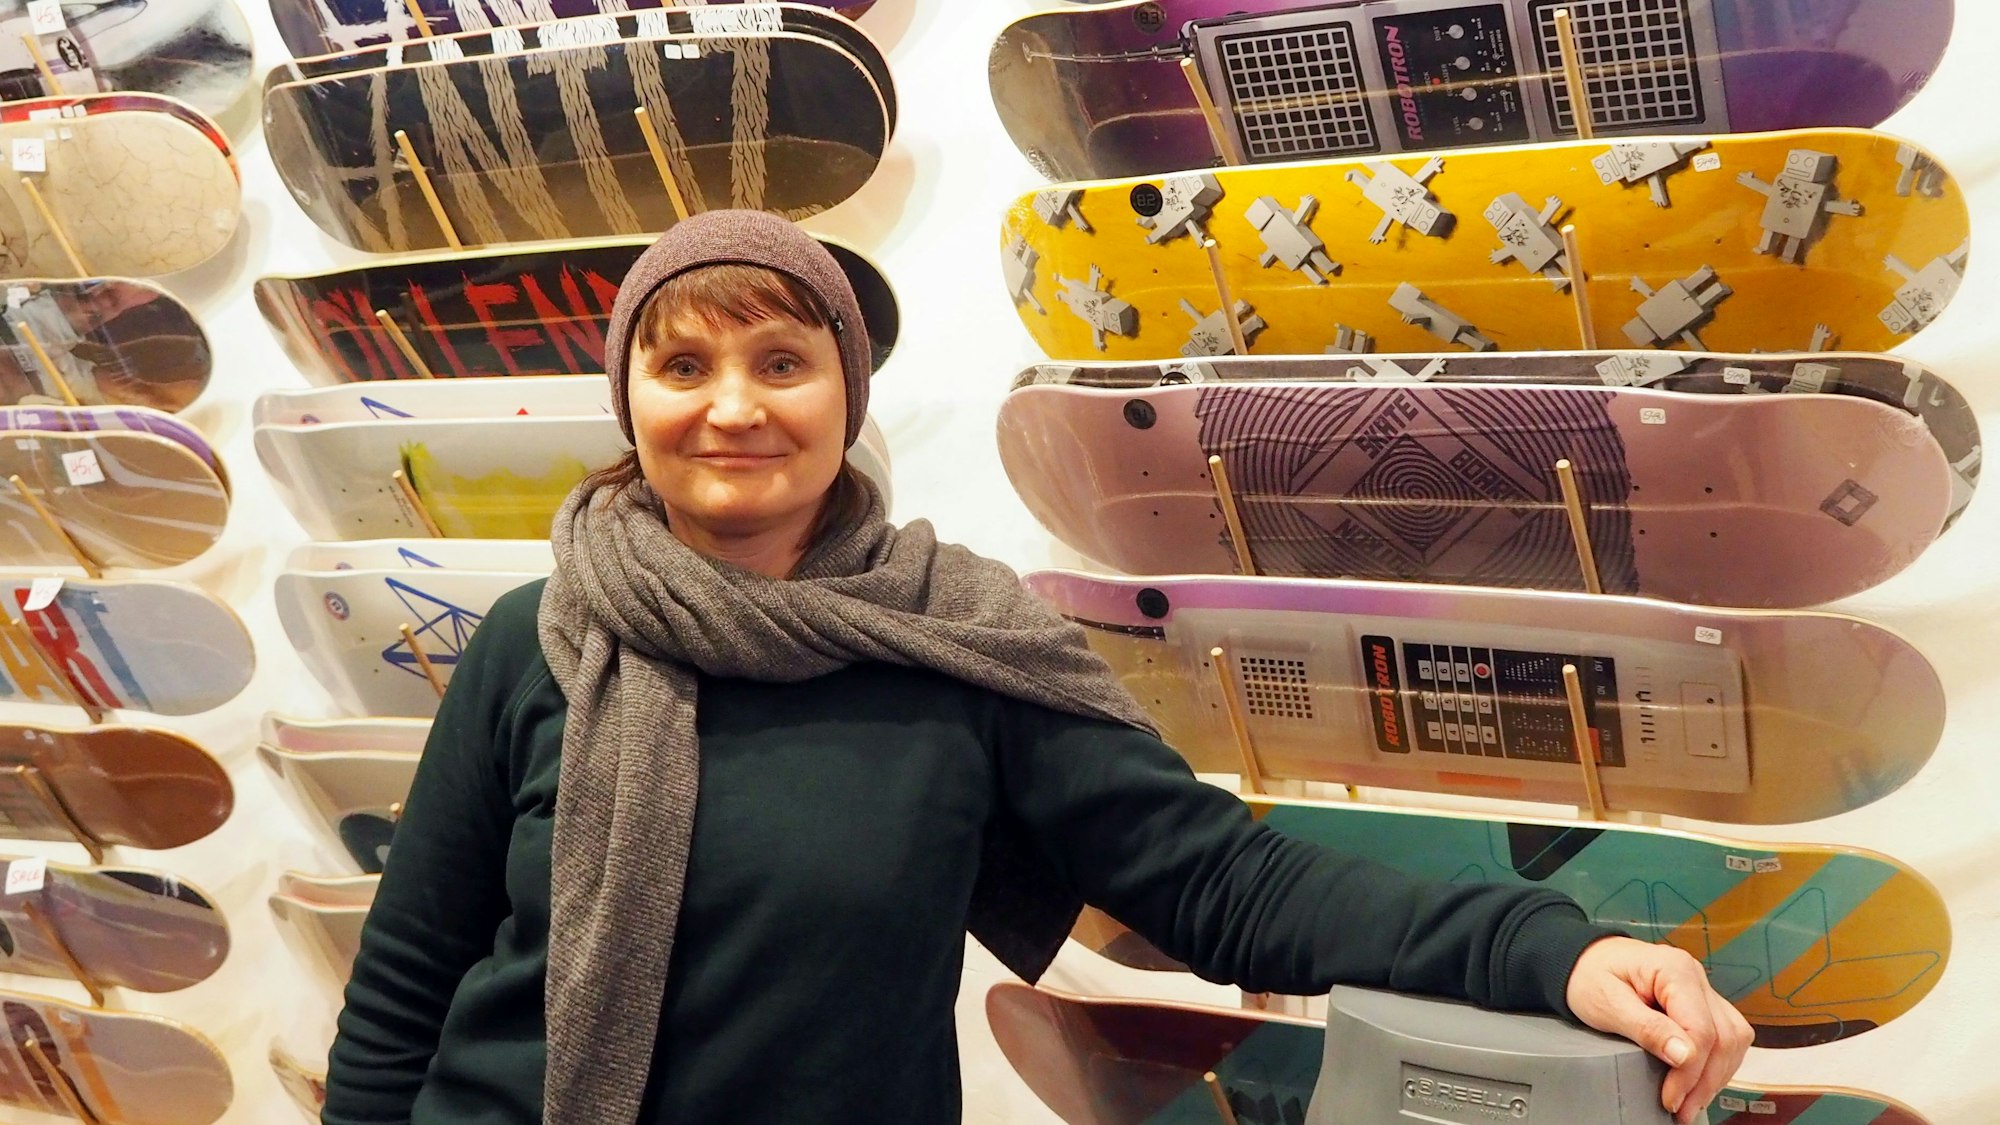 Eine Frau in Pulli, Schal und Mütze steht vor einer Wand, an der Skateboards in vielen Designs hängen.